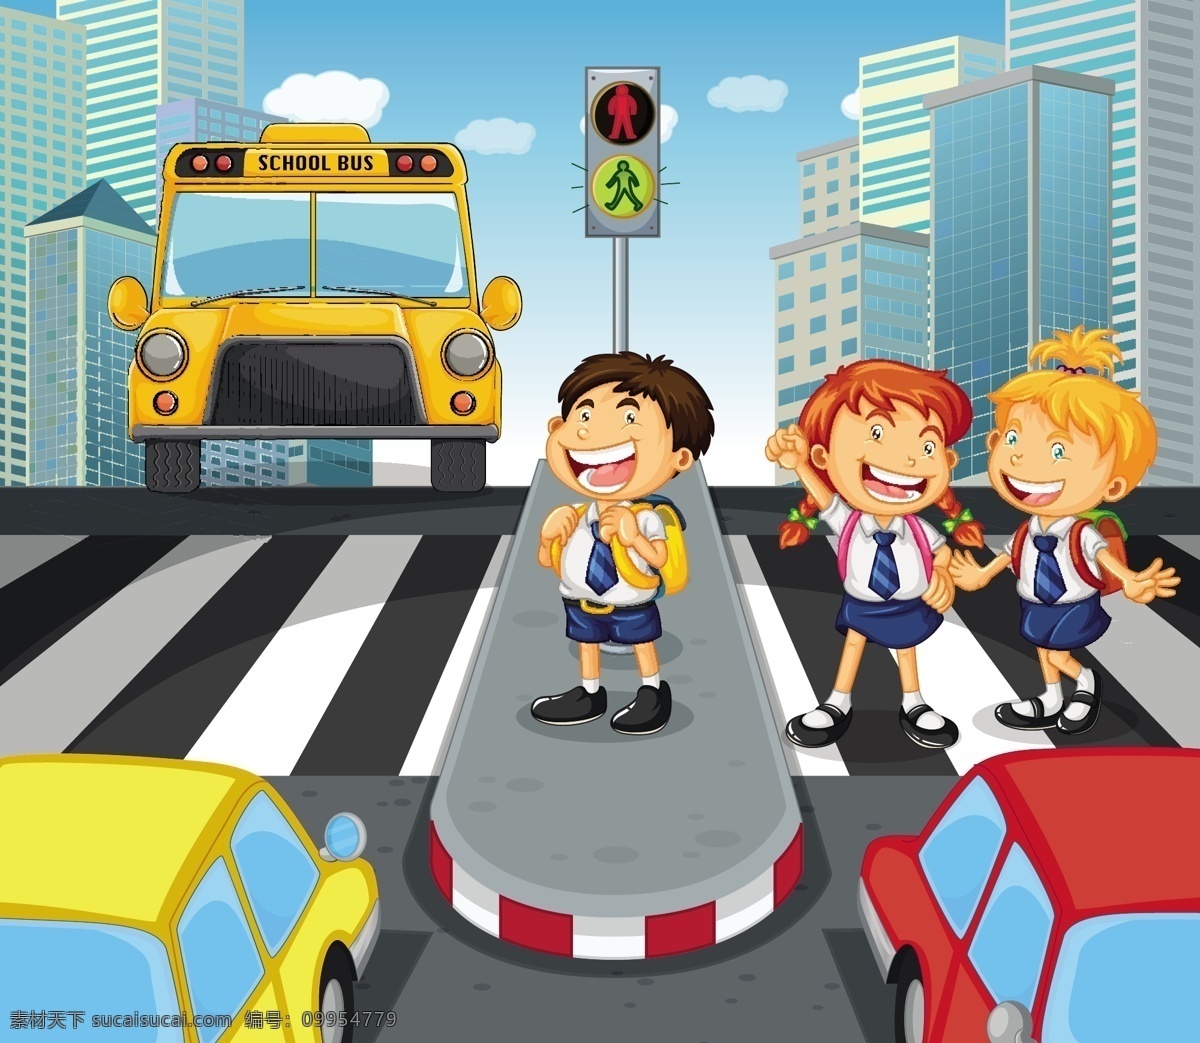 学生过马路 学生 过马路 卡通 交通 安全 儿童 路口 道路 安全教育 横道线 放学路上 上学路上 卡通儿童 卡通设计